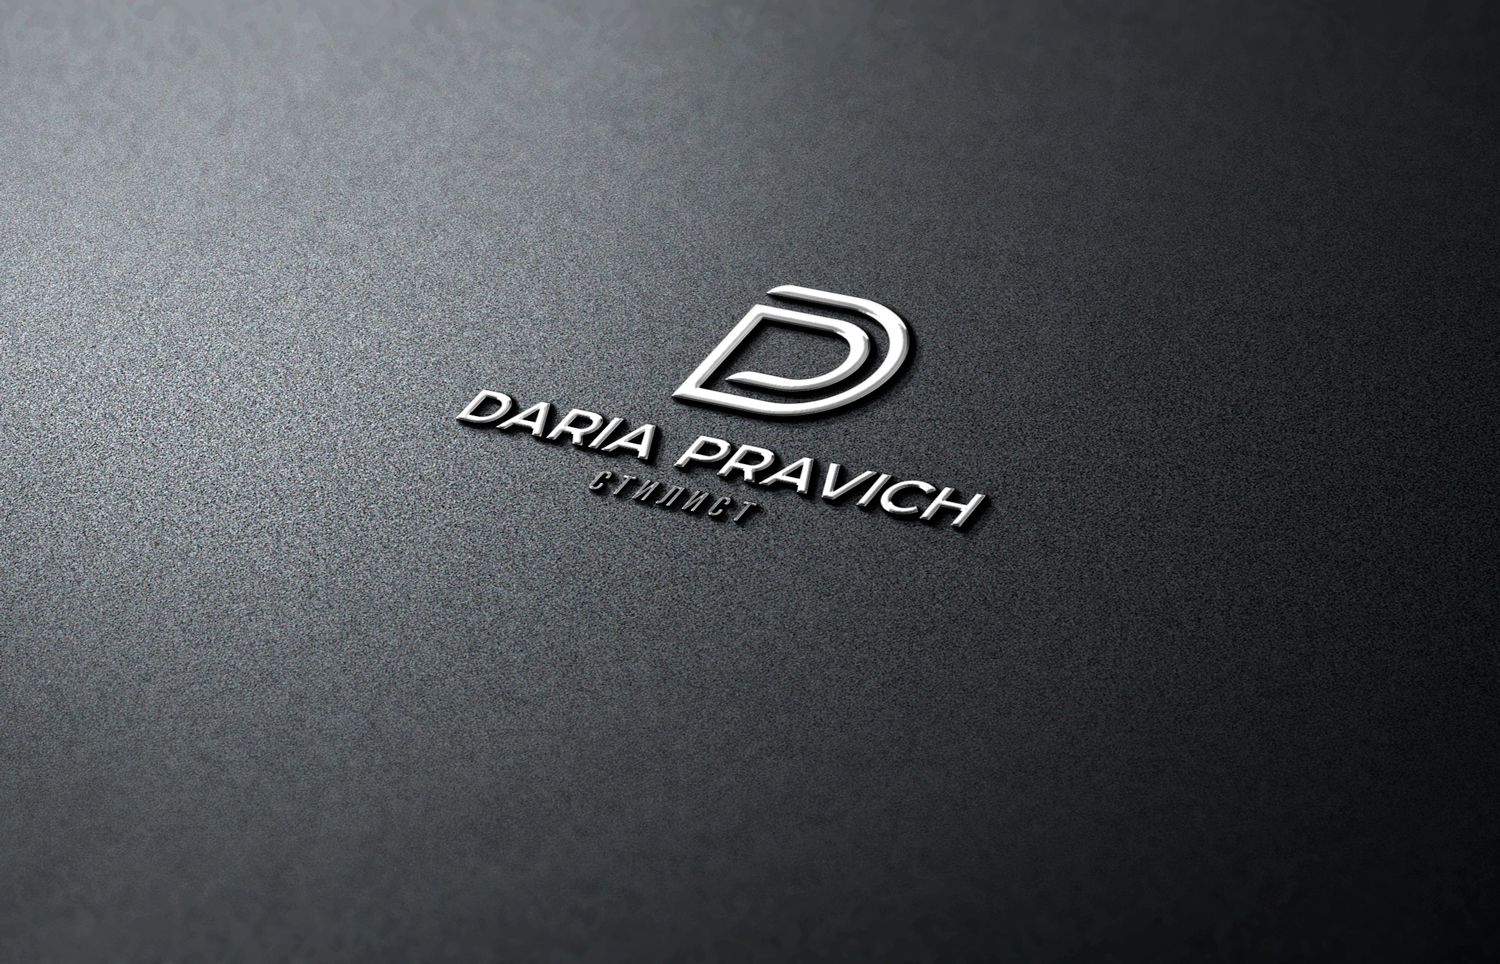 Логотип для Дарья Правич - дизайнер BARS_PROD